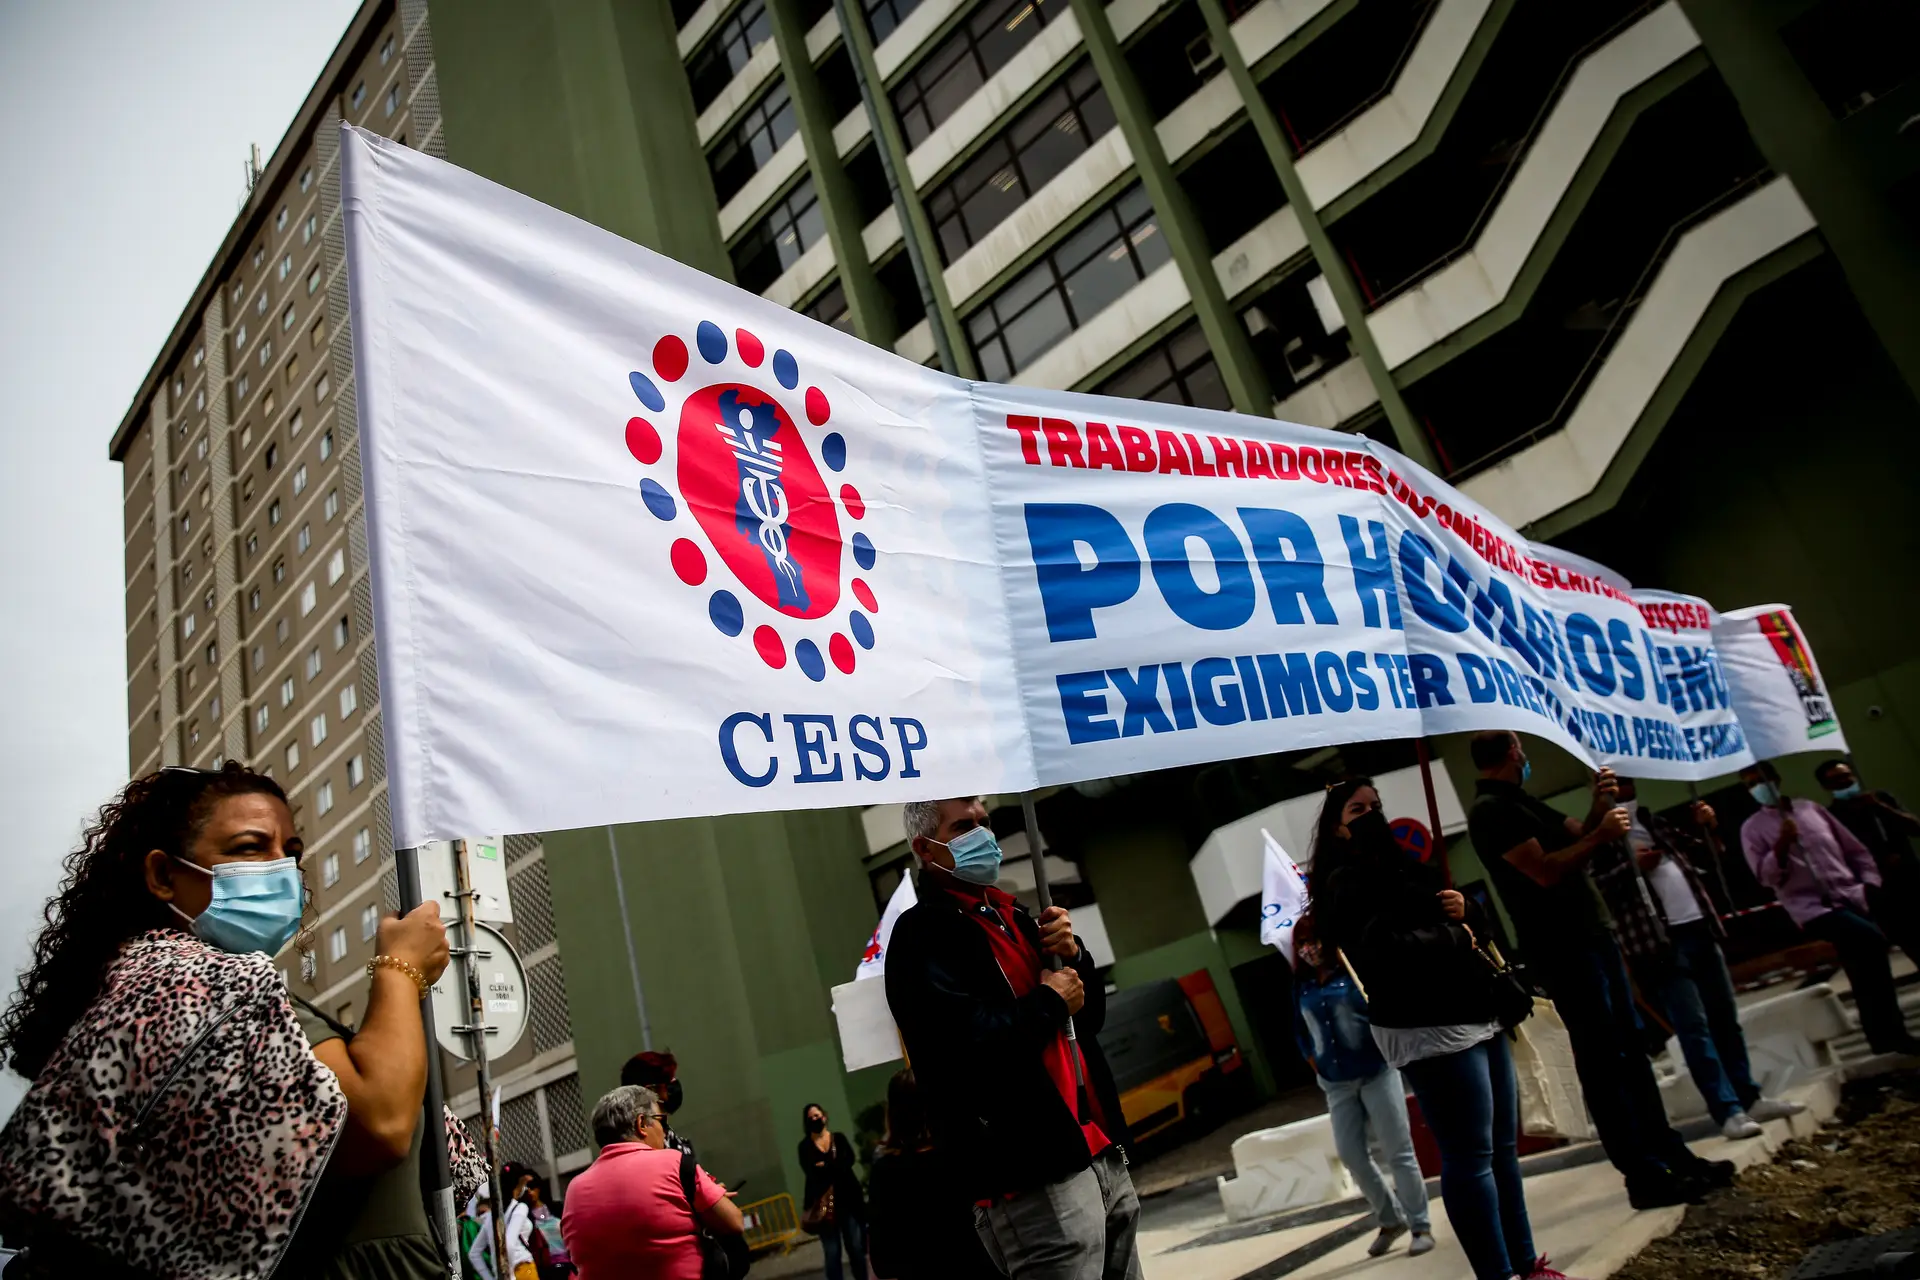 Vigília dos trabalhadores dos supermercados Pingo Doce / Jerónimo Martins contra o banco de horas, promovida pelo CESP - Sindicato dos Trabalhadores do Comércio, Escritórios e Serviços de Portugal